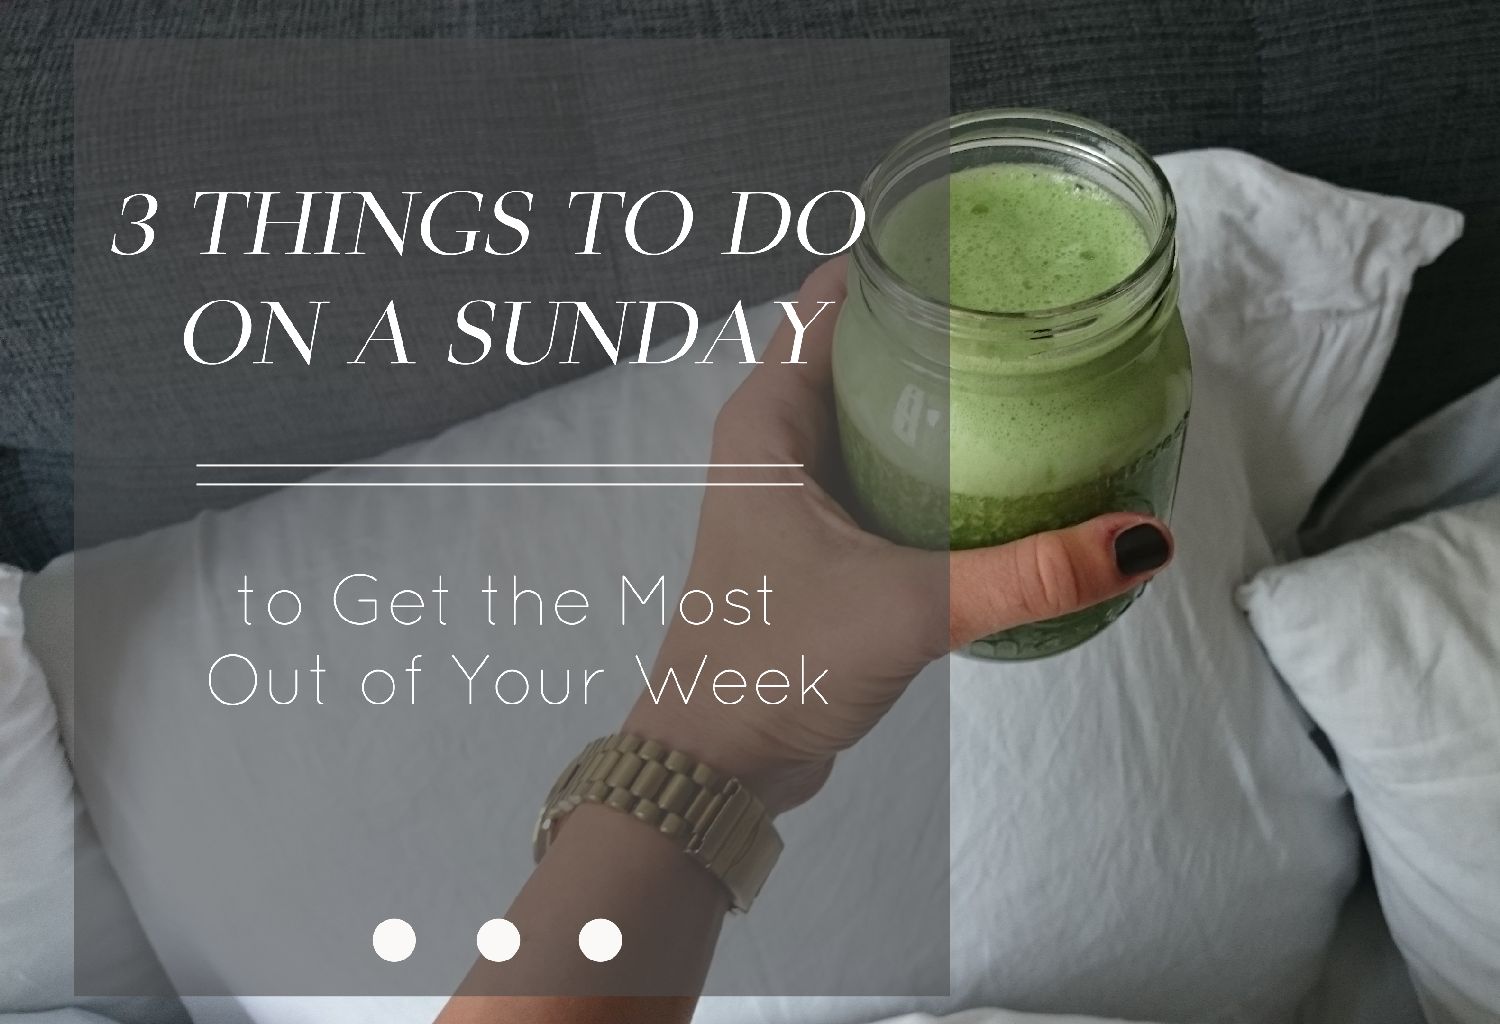 3 Things To Do to Get the Most Out of Your Week | 3 Dinge die an einem Sonntag tun kannst um deine Woche produktiver zu gestalten